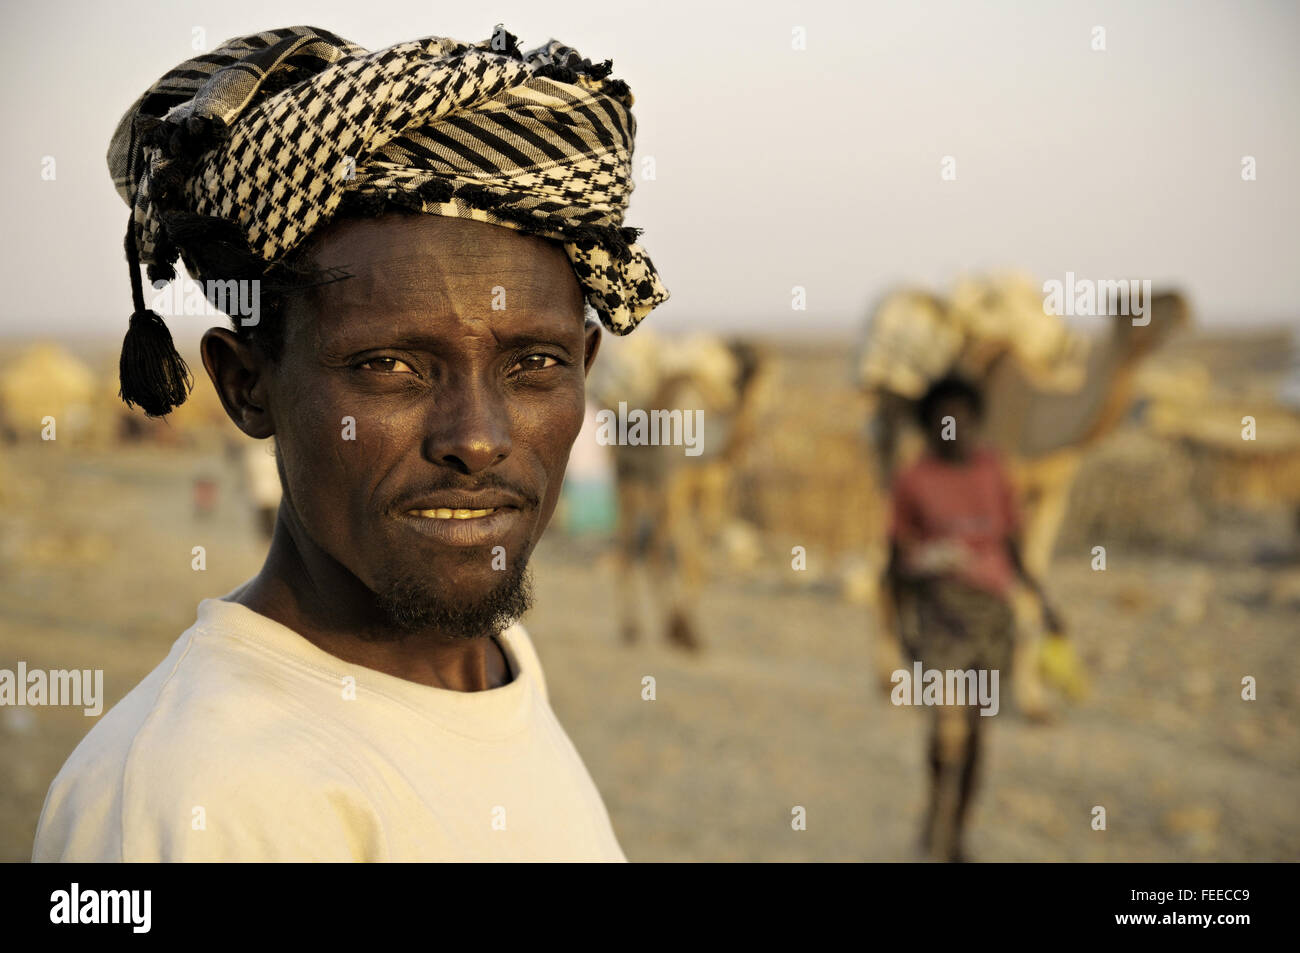 Portrait of an Afar man with a turban in the village of Ahmed Ela, Danakil depression, Afar Region, Ethiopia Stock Photo